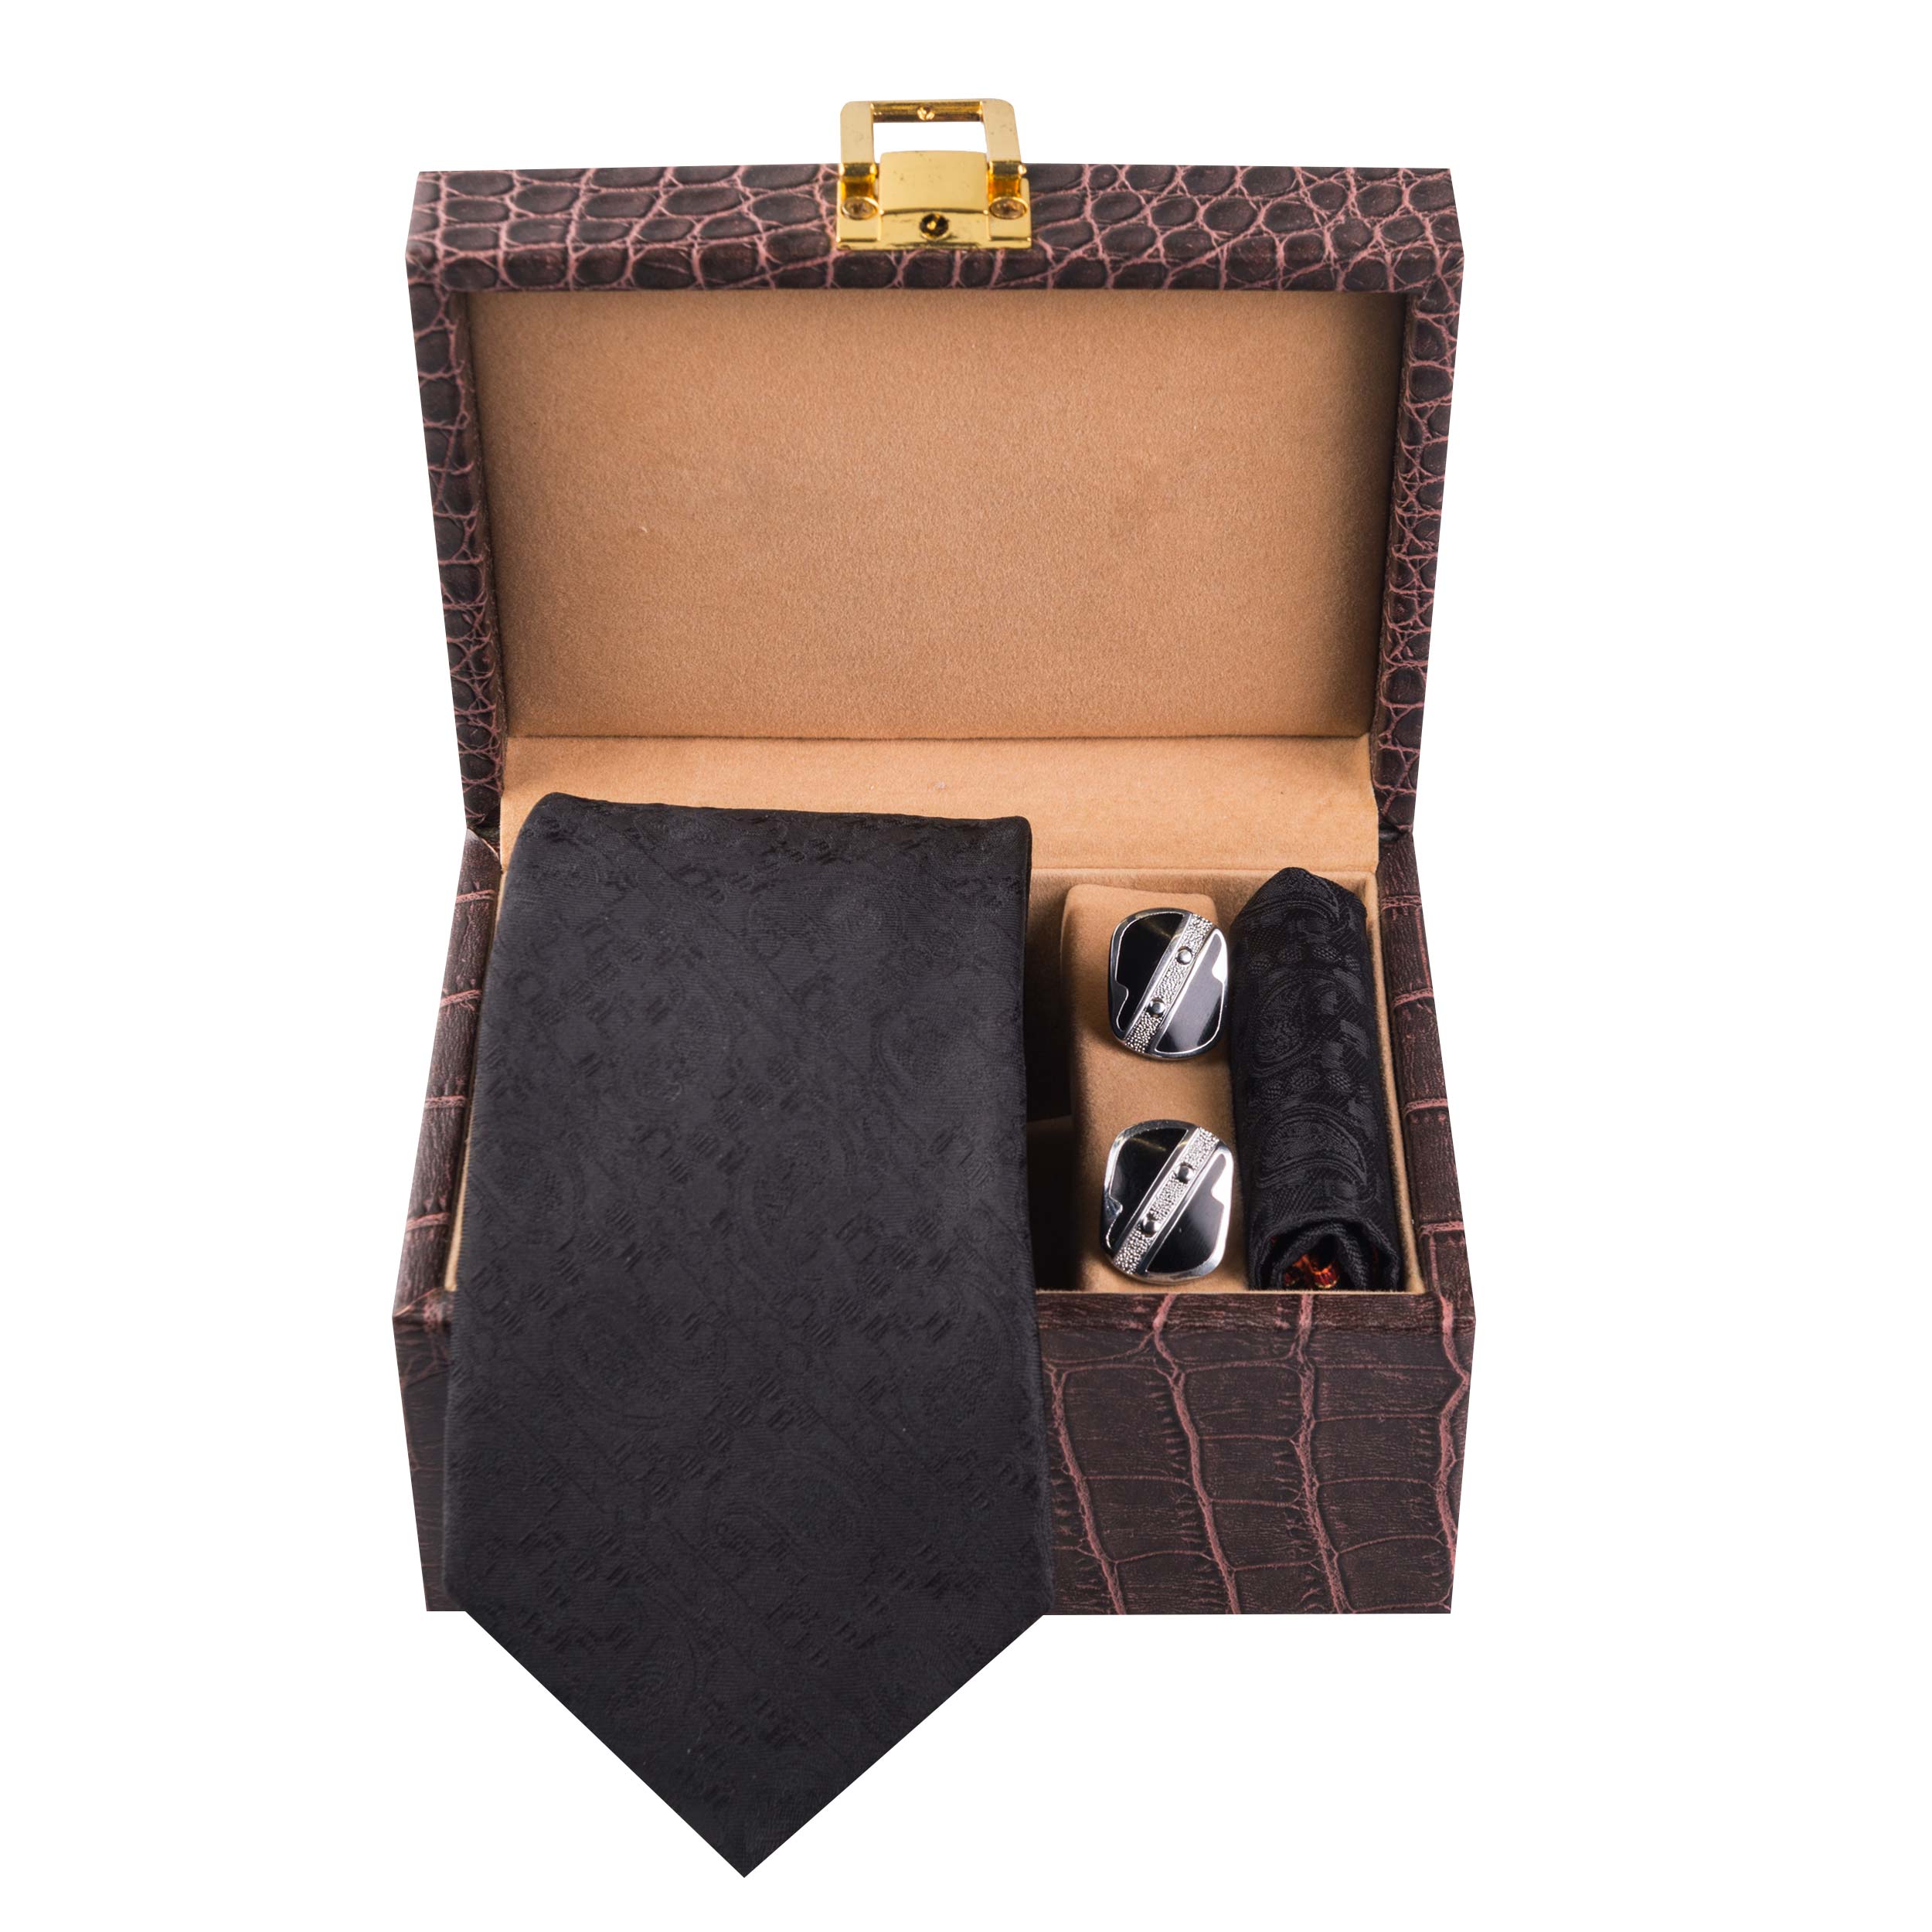 ست کراوات ، دستمال جیب و دکمه سردست مردانه مدل GF-PO1253-BK-BOX